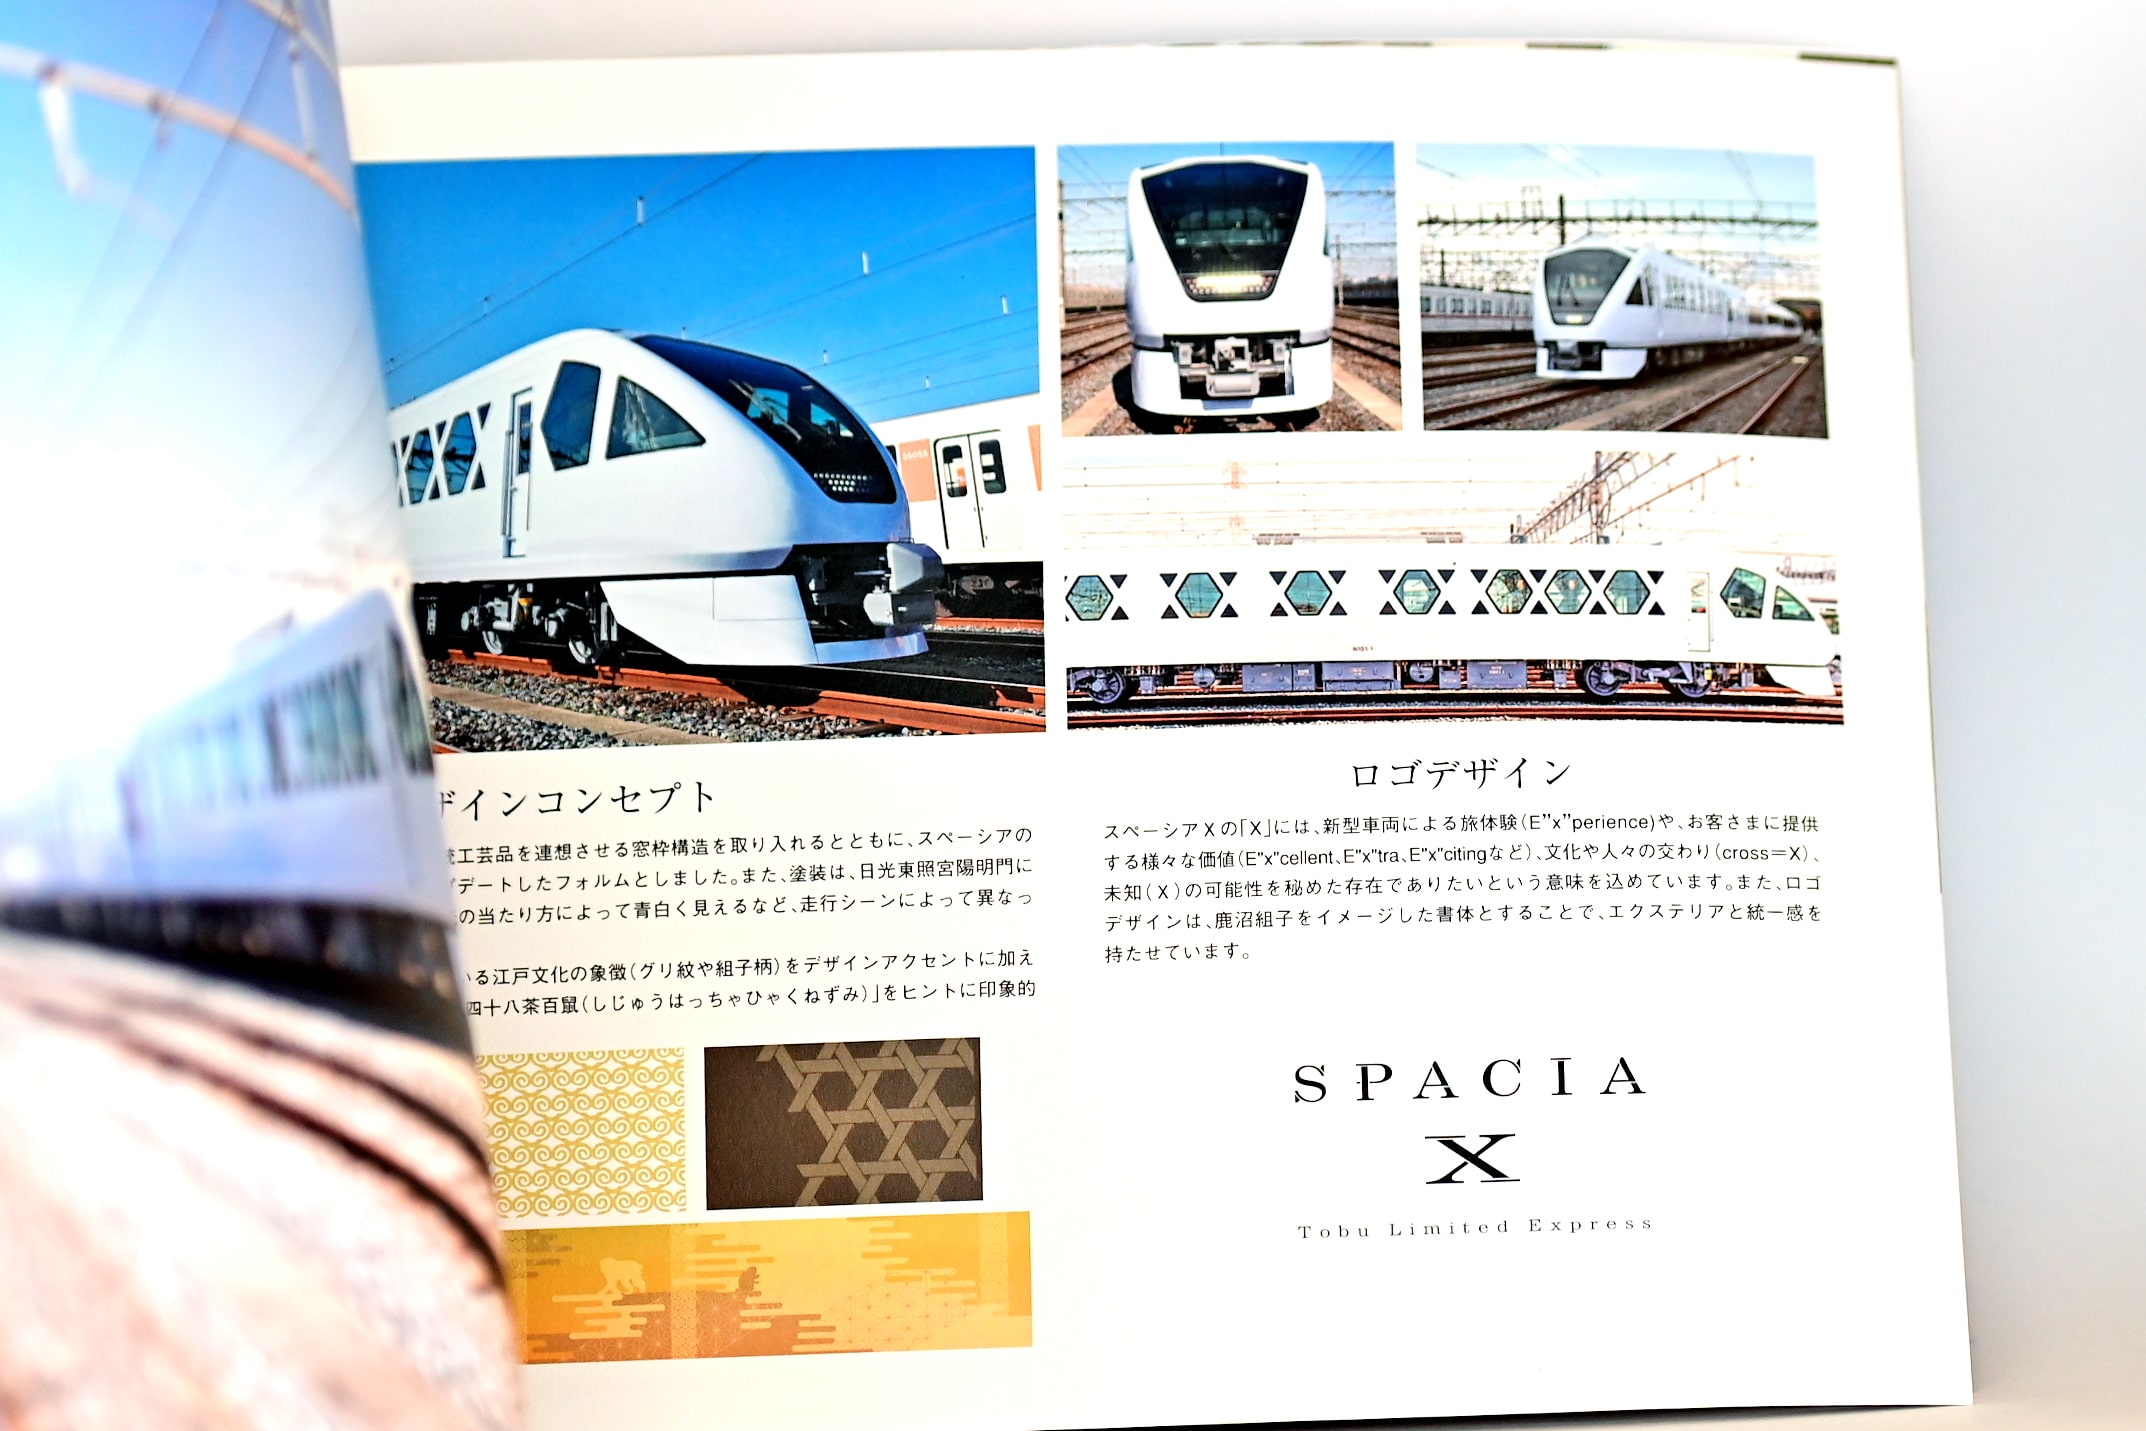 SPACIA X 運行開始記念ピンバッジ - 鉄道